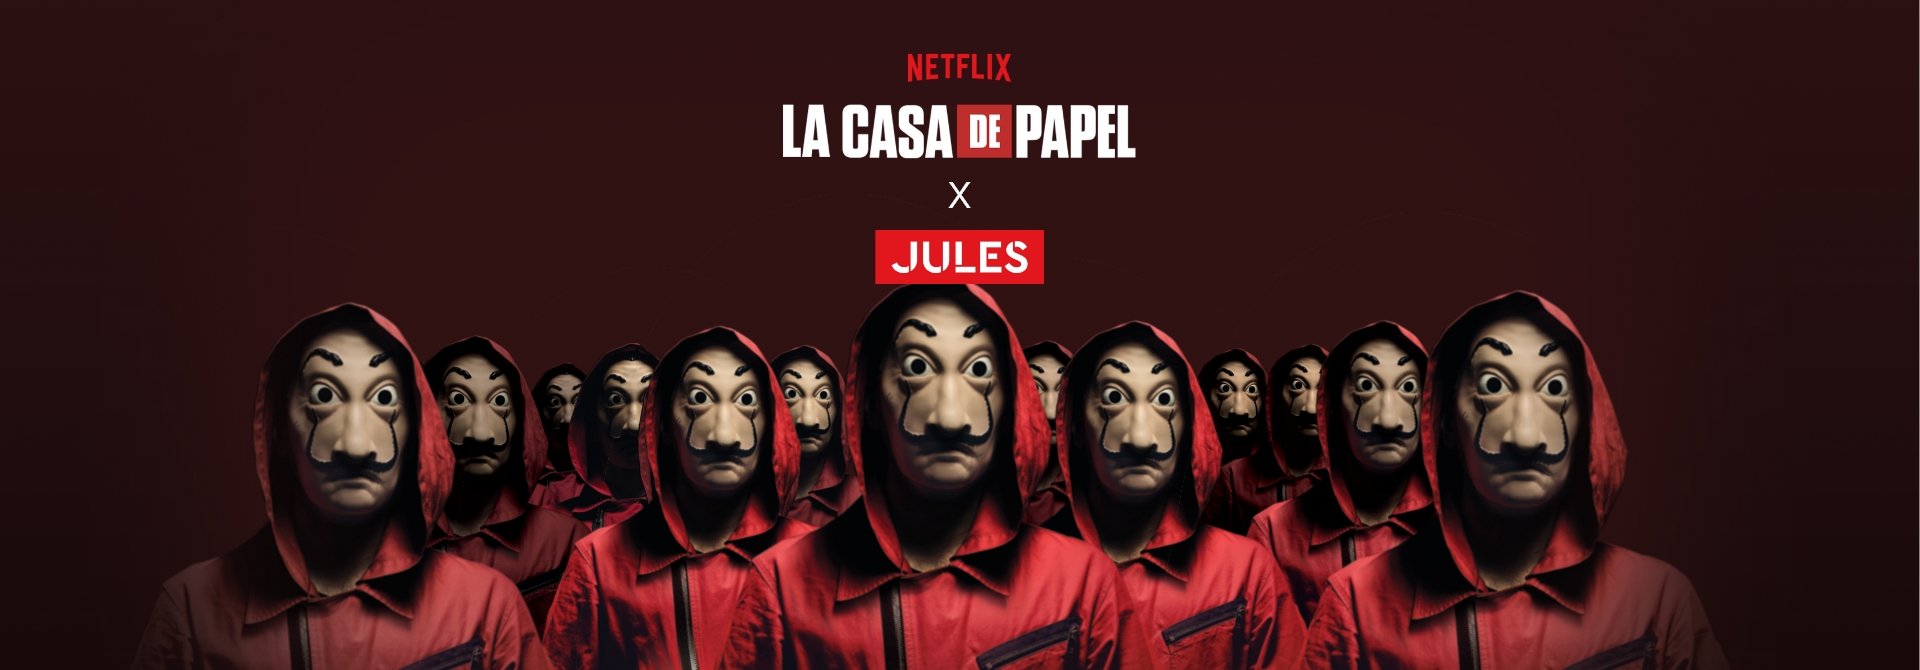 Netflix : La casa de papel X Jules